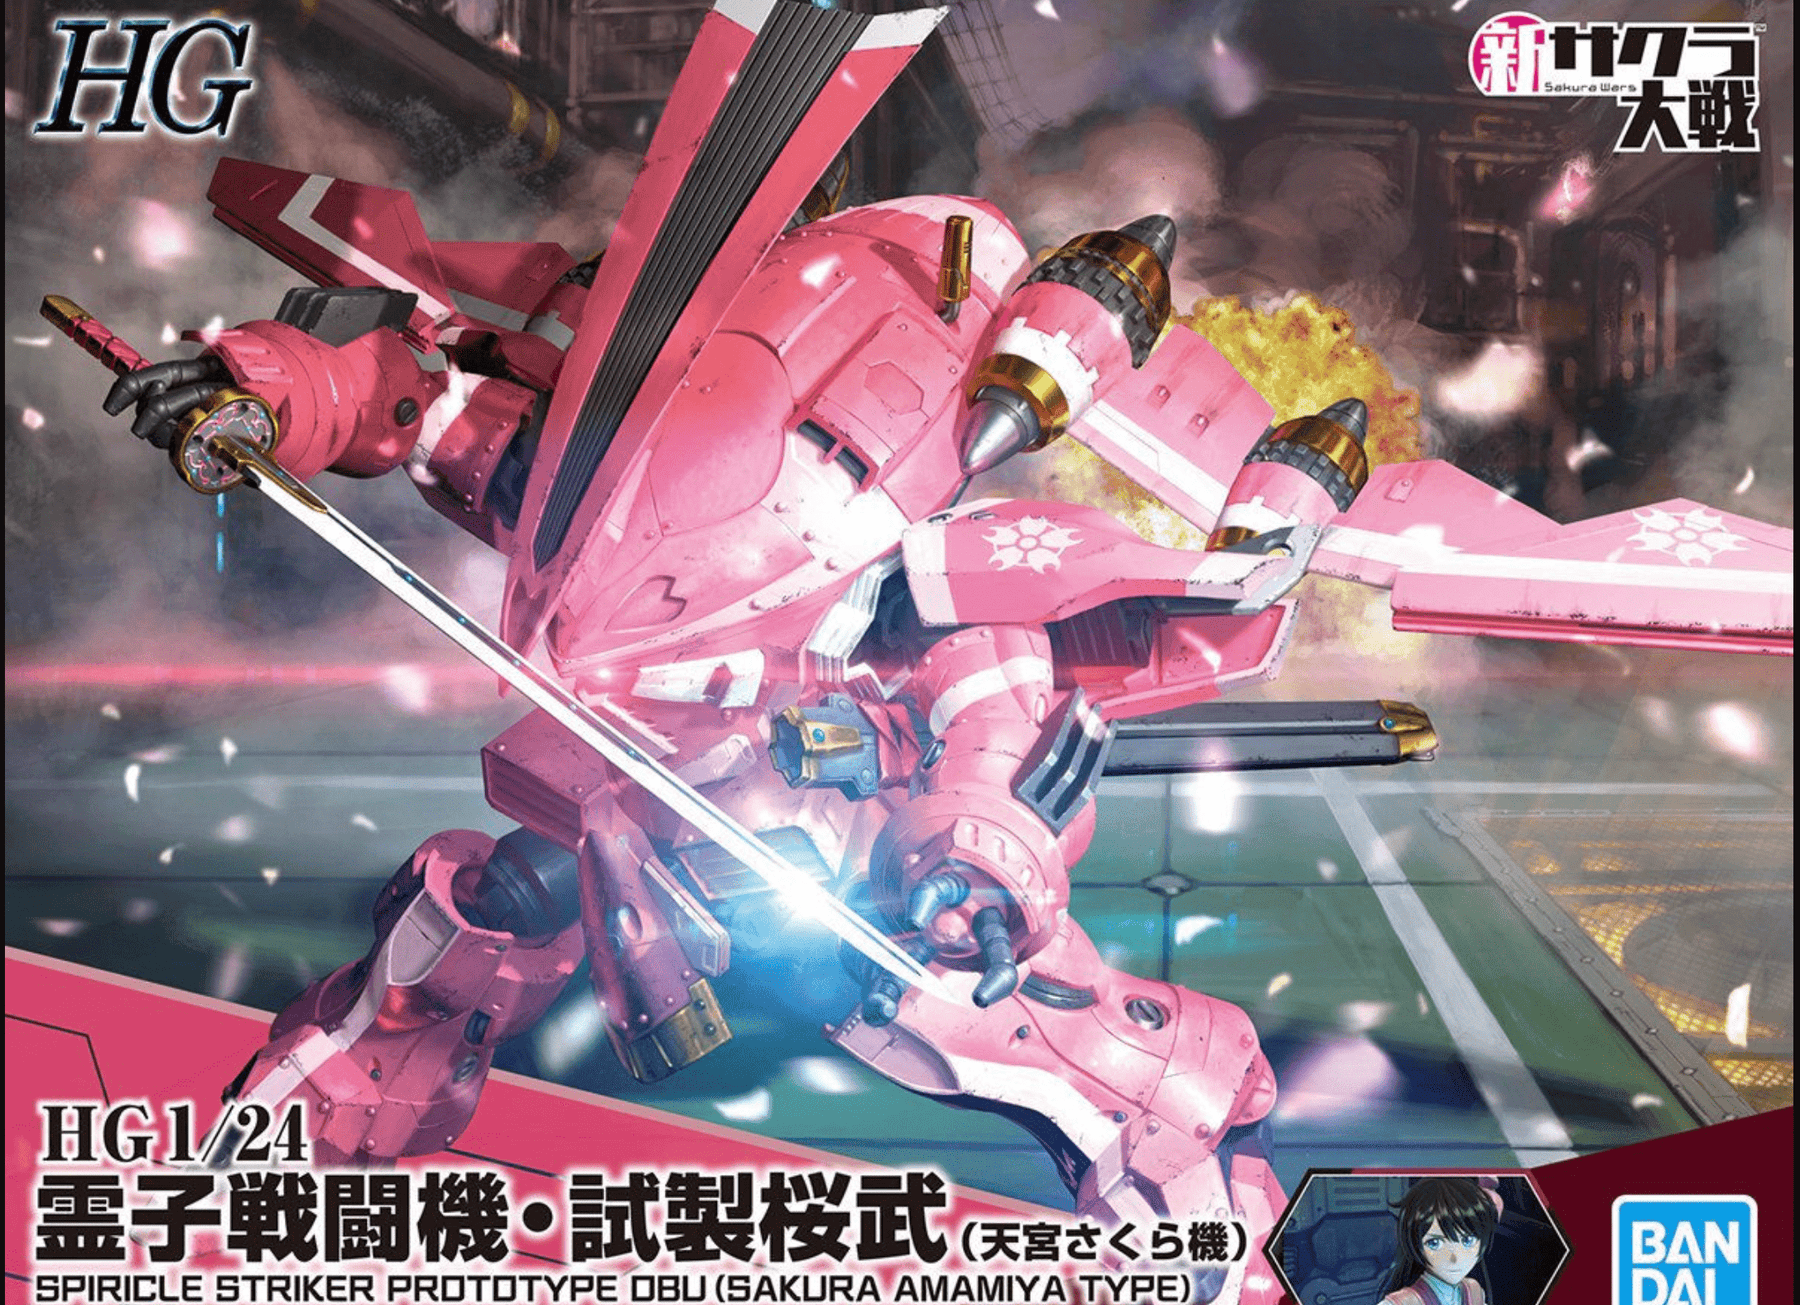 Bandai: Sakura Wars - Spiricle Striker Prototype Obu, Sakura Amamiya Type - Third Eye